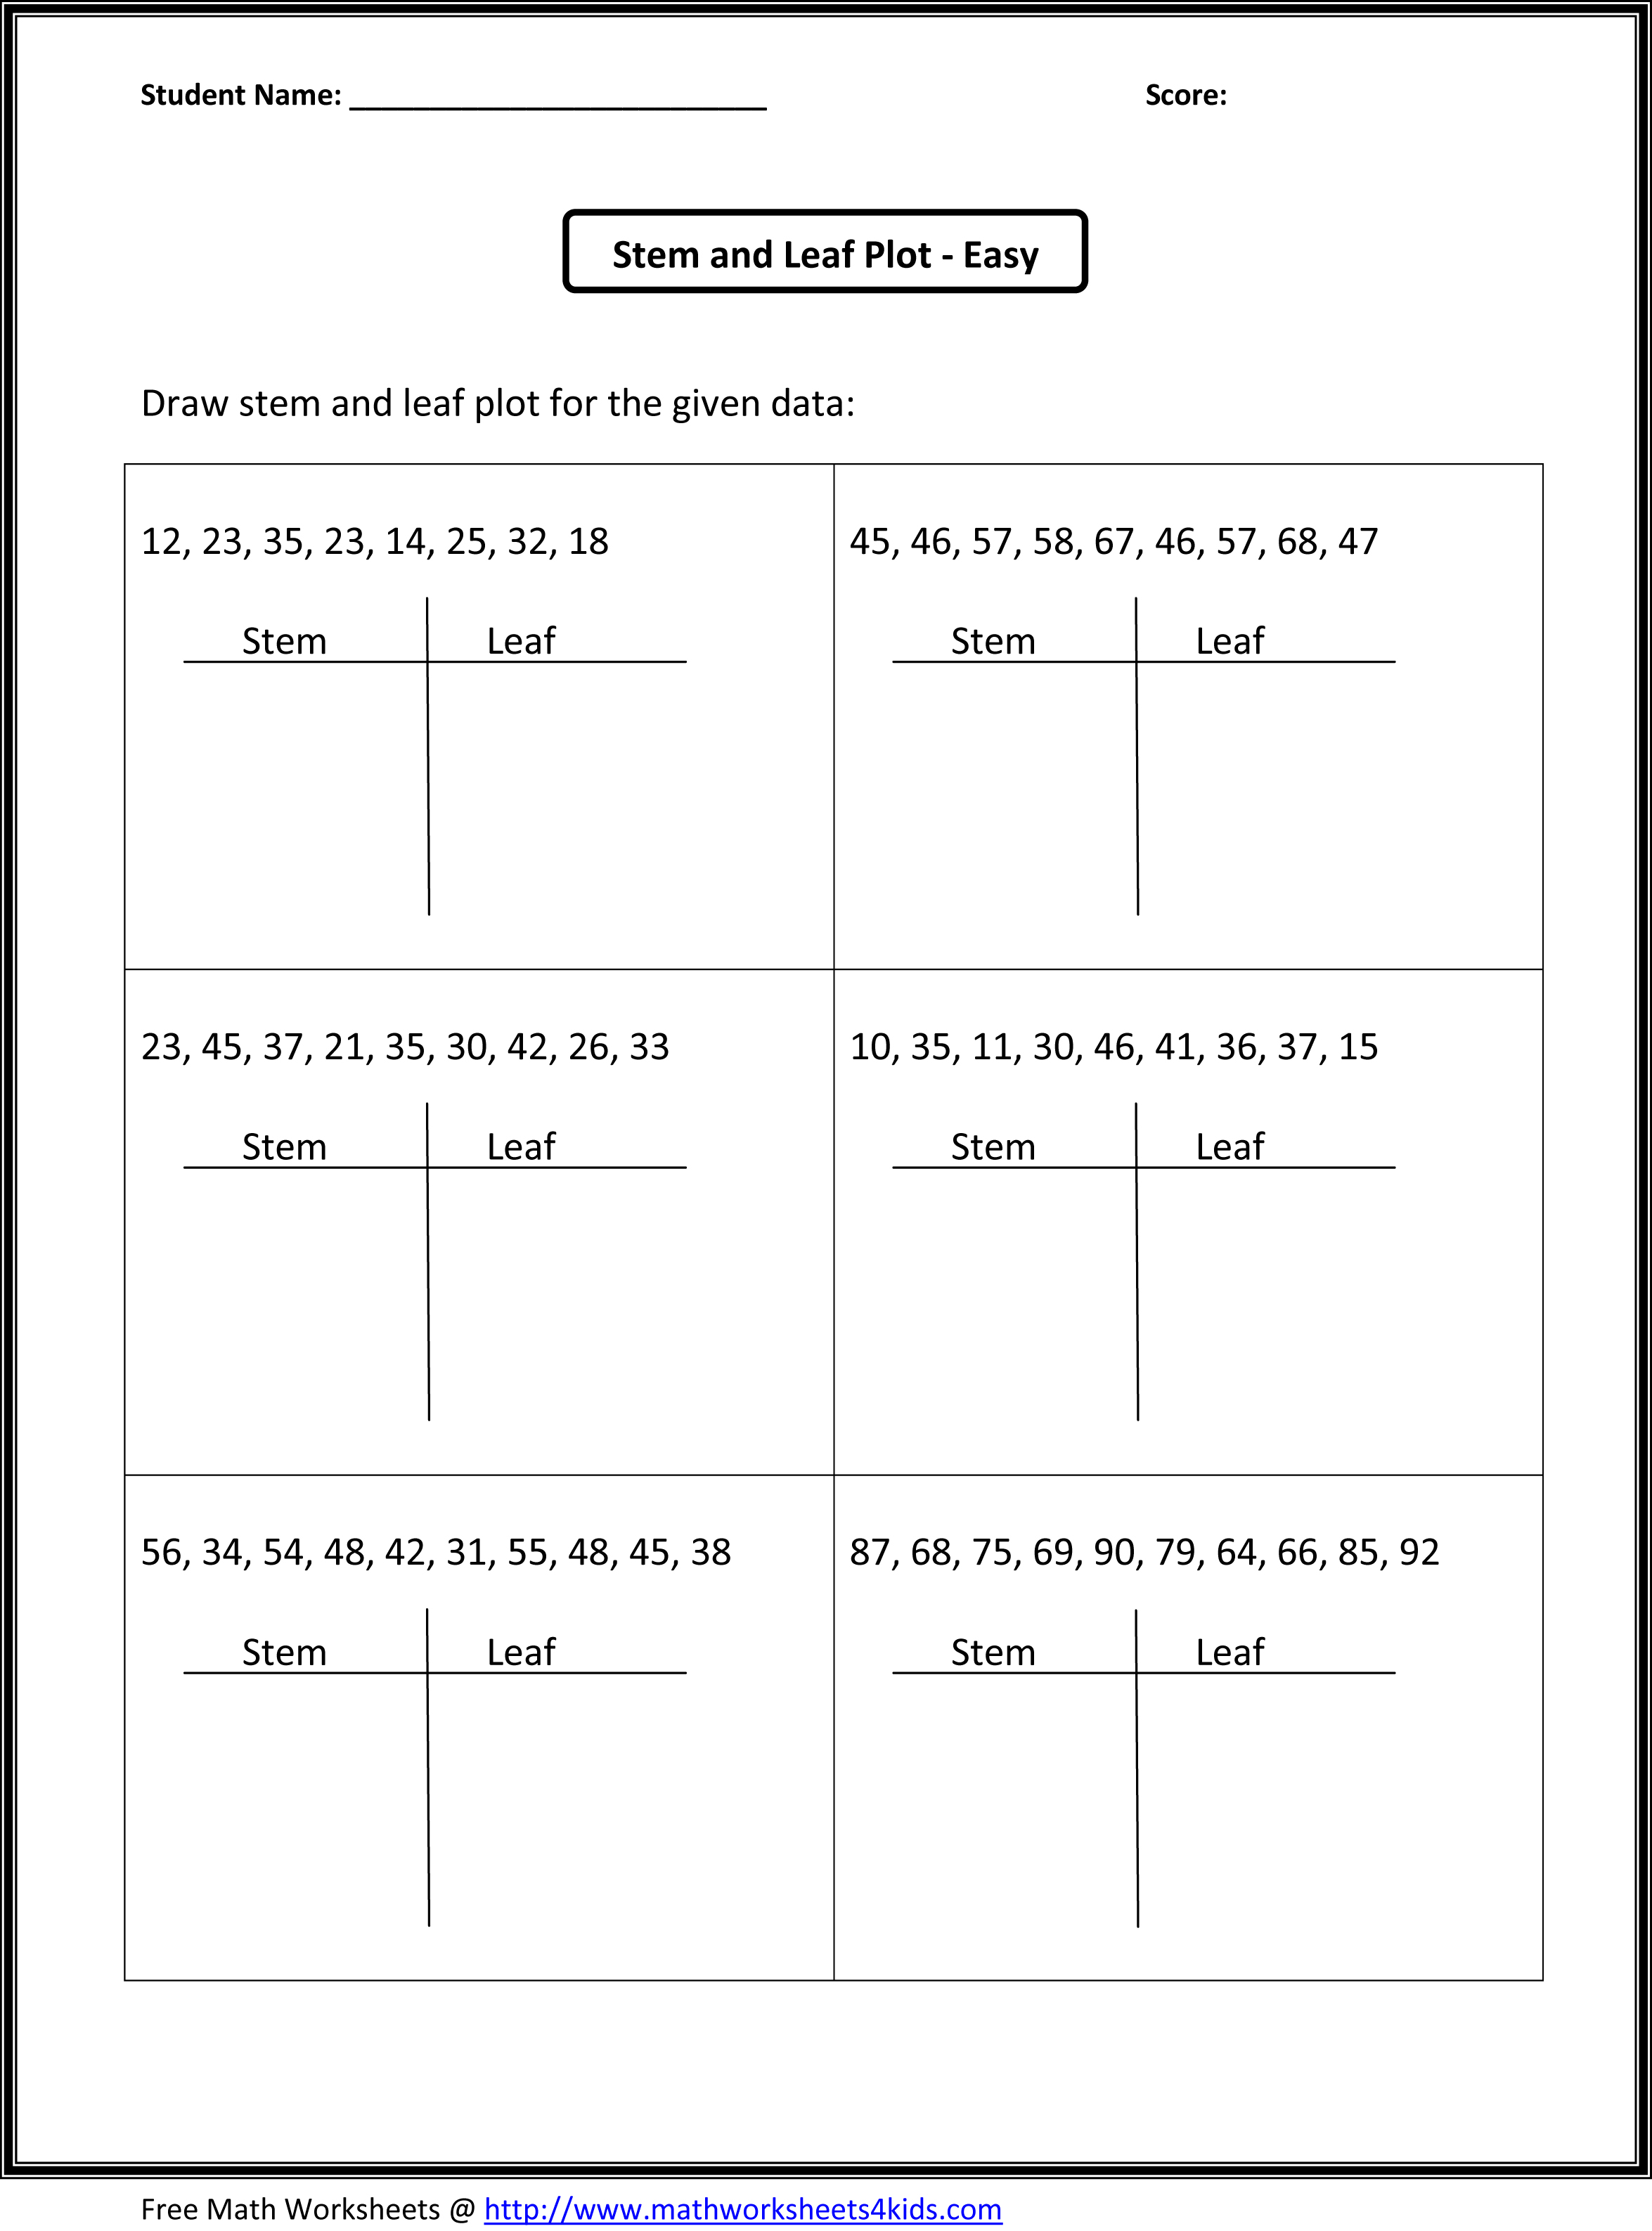 Stem and Leaf Plot Worksheets 6th Grade Image